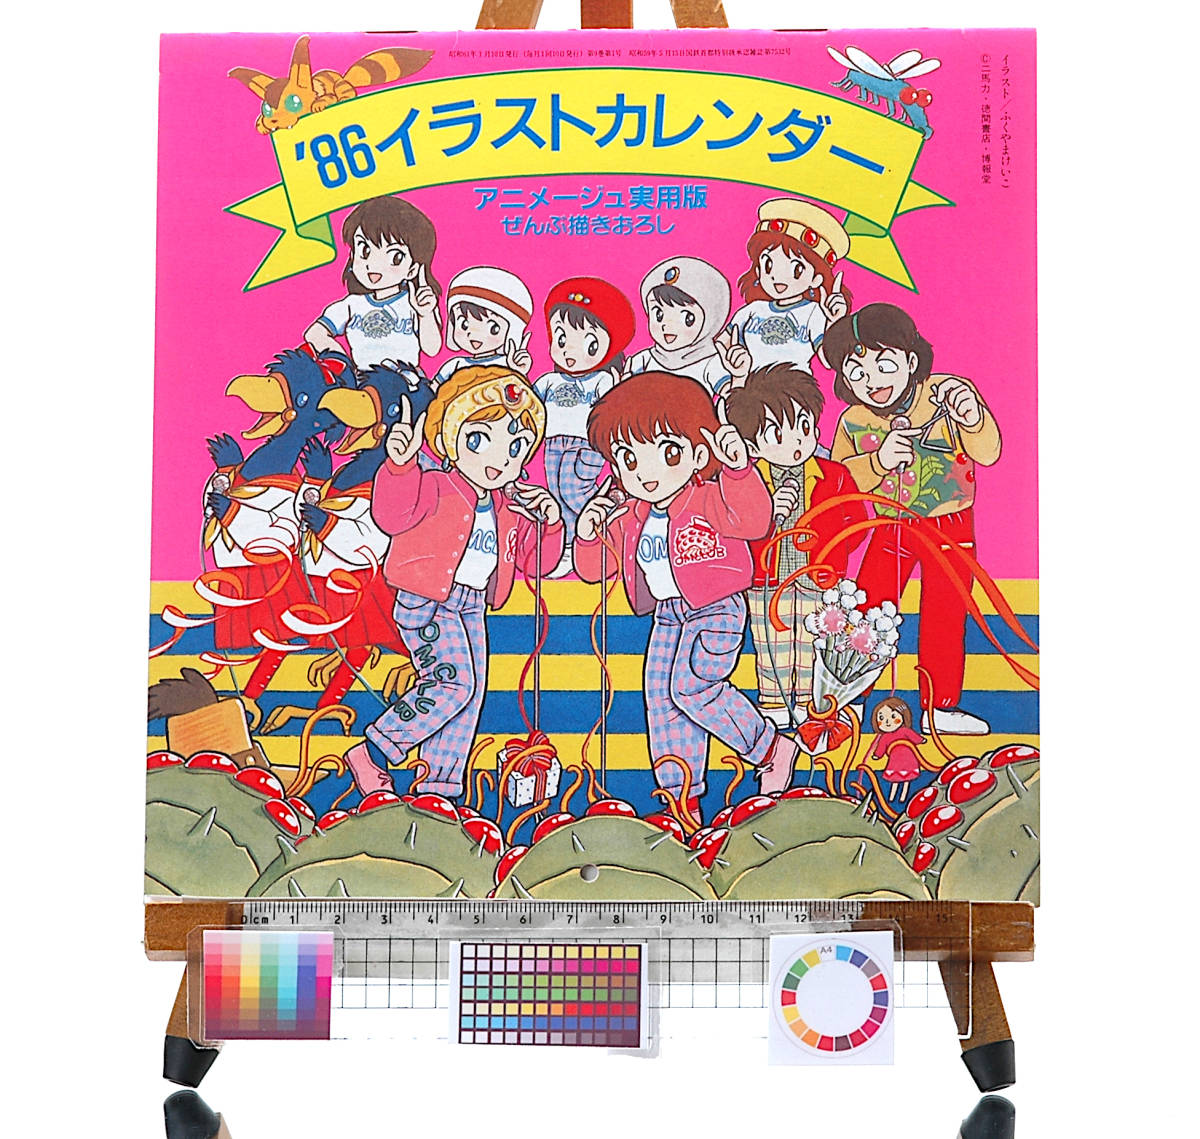 【ネット限定】 [Vintage] [New version[tag3333] Practical Calendar Illustration Anime Drawn All Bonus Animege Free]1986 [Delivery Item] アニメージュ